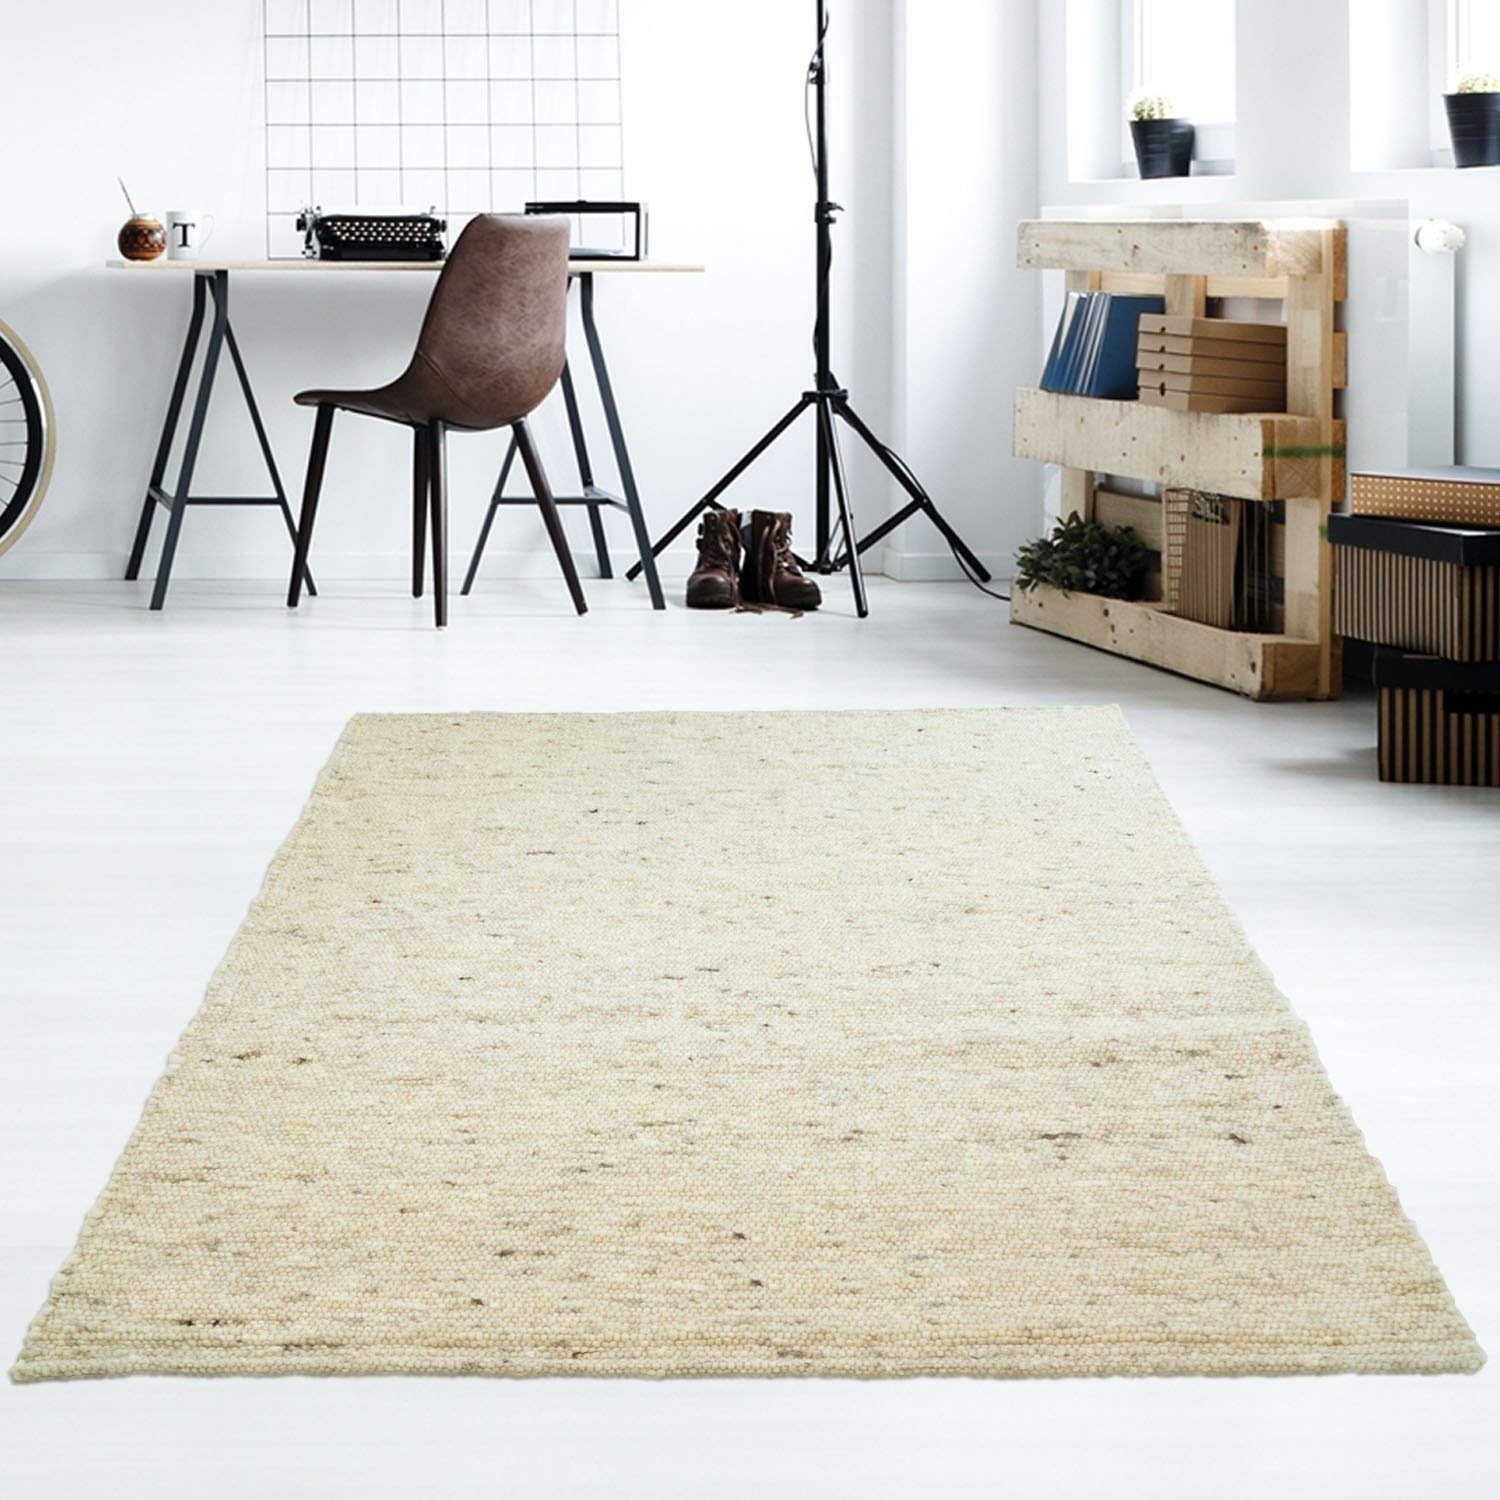 Taracarpet Moderner Handweb Teppich Alpina handgewebt aus Schurwolle für Wohnzimmer, Esszimmer, Schlafzimmer und die Küche geeignet (090 x 160 cm, 60 Beige meliert)